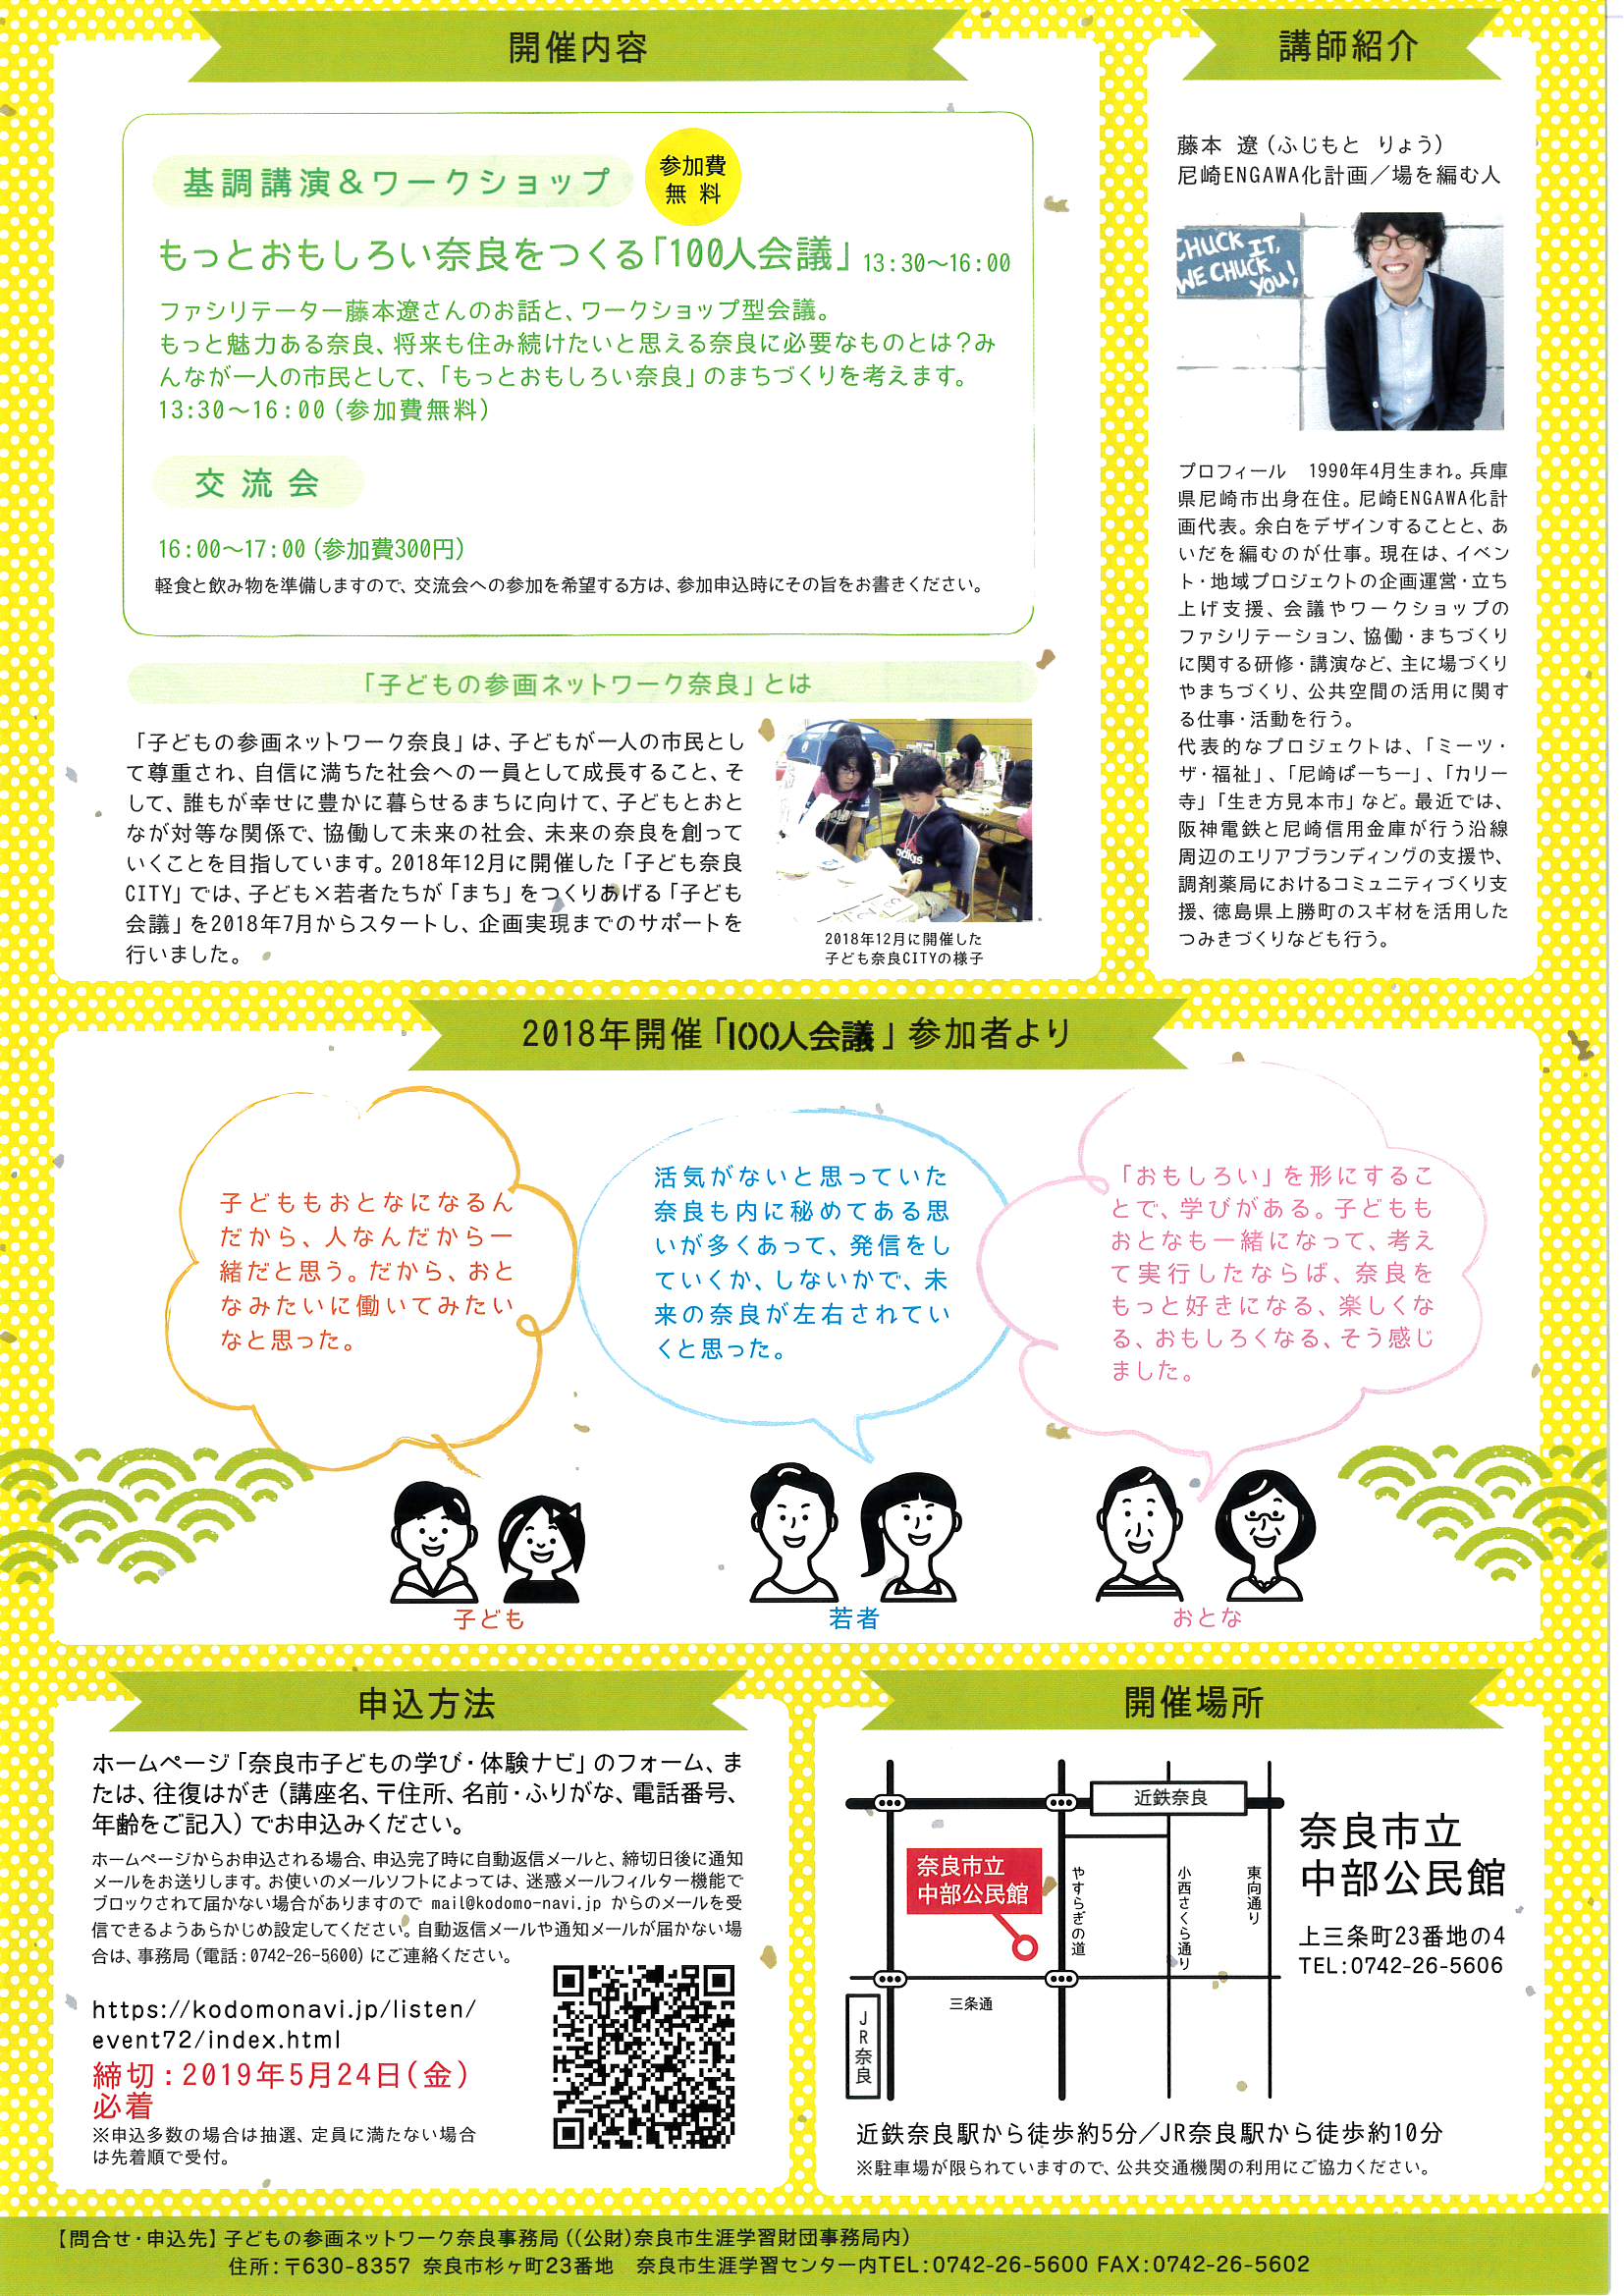 子ども×若者×おとな「もっともっとおもしろい奈良をつくる100人会議」(令和元年5月14日発表)の画像2